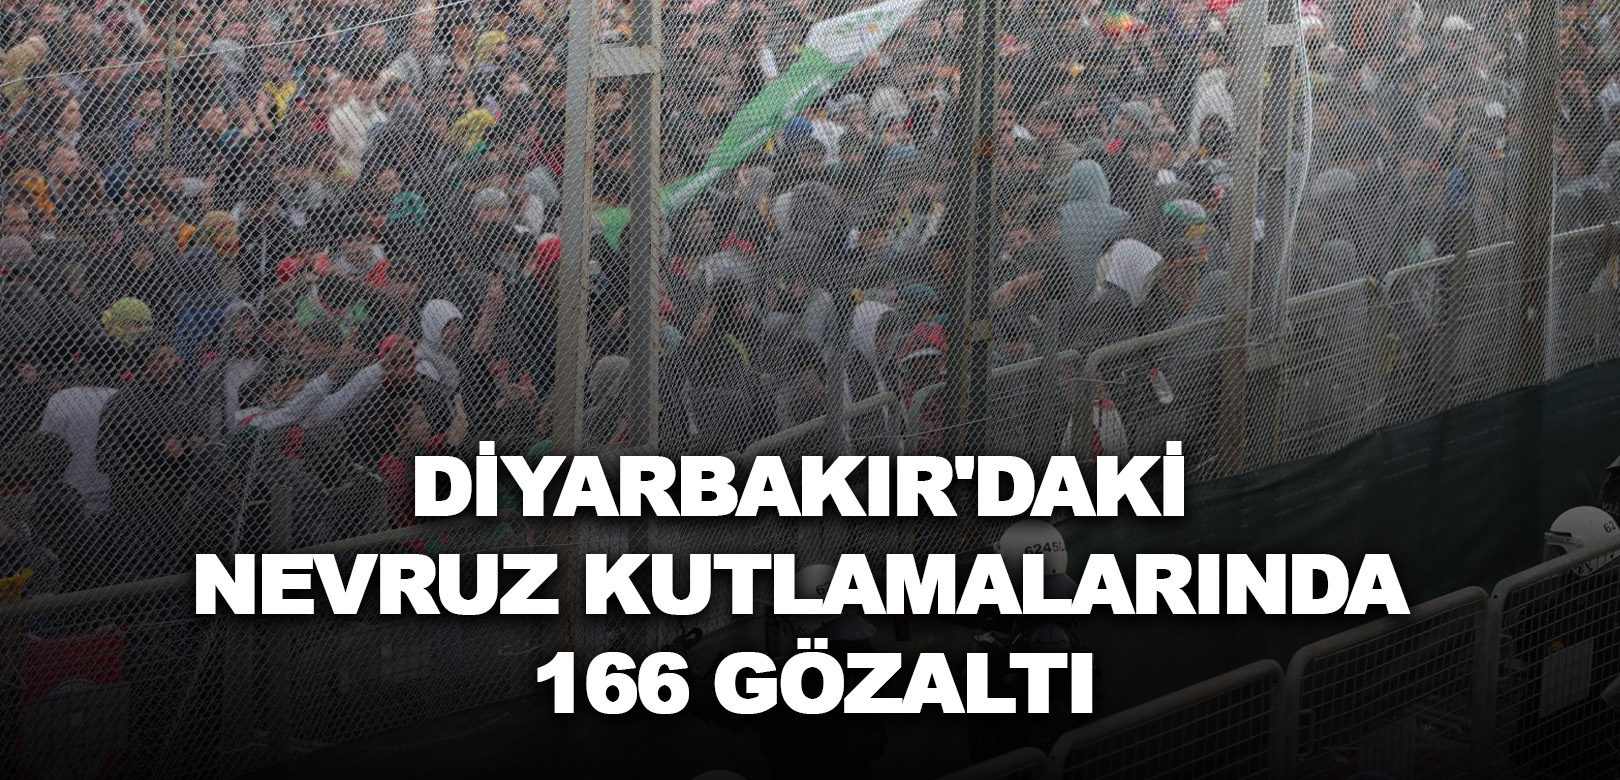 Diyarbakır'daki nevruz kutlamalarında 166 gözaltı!